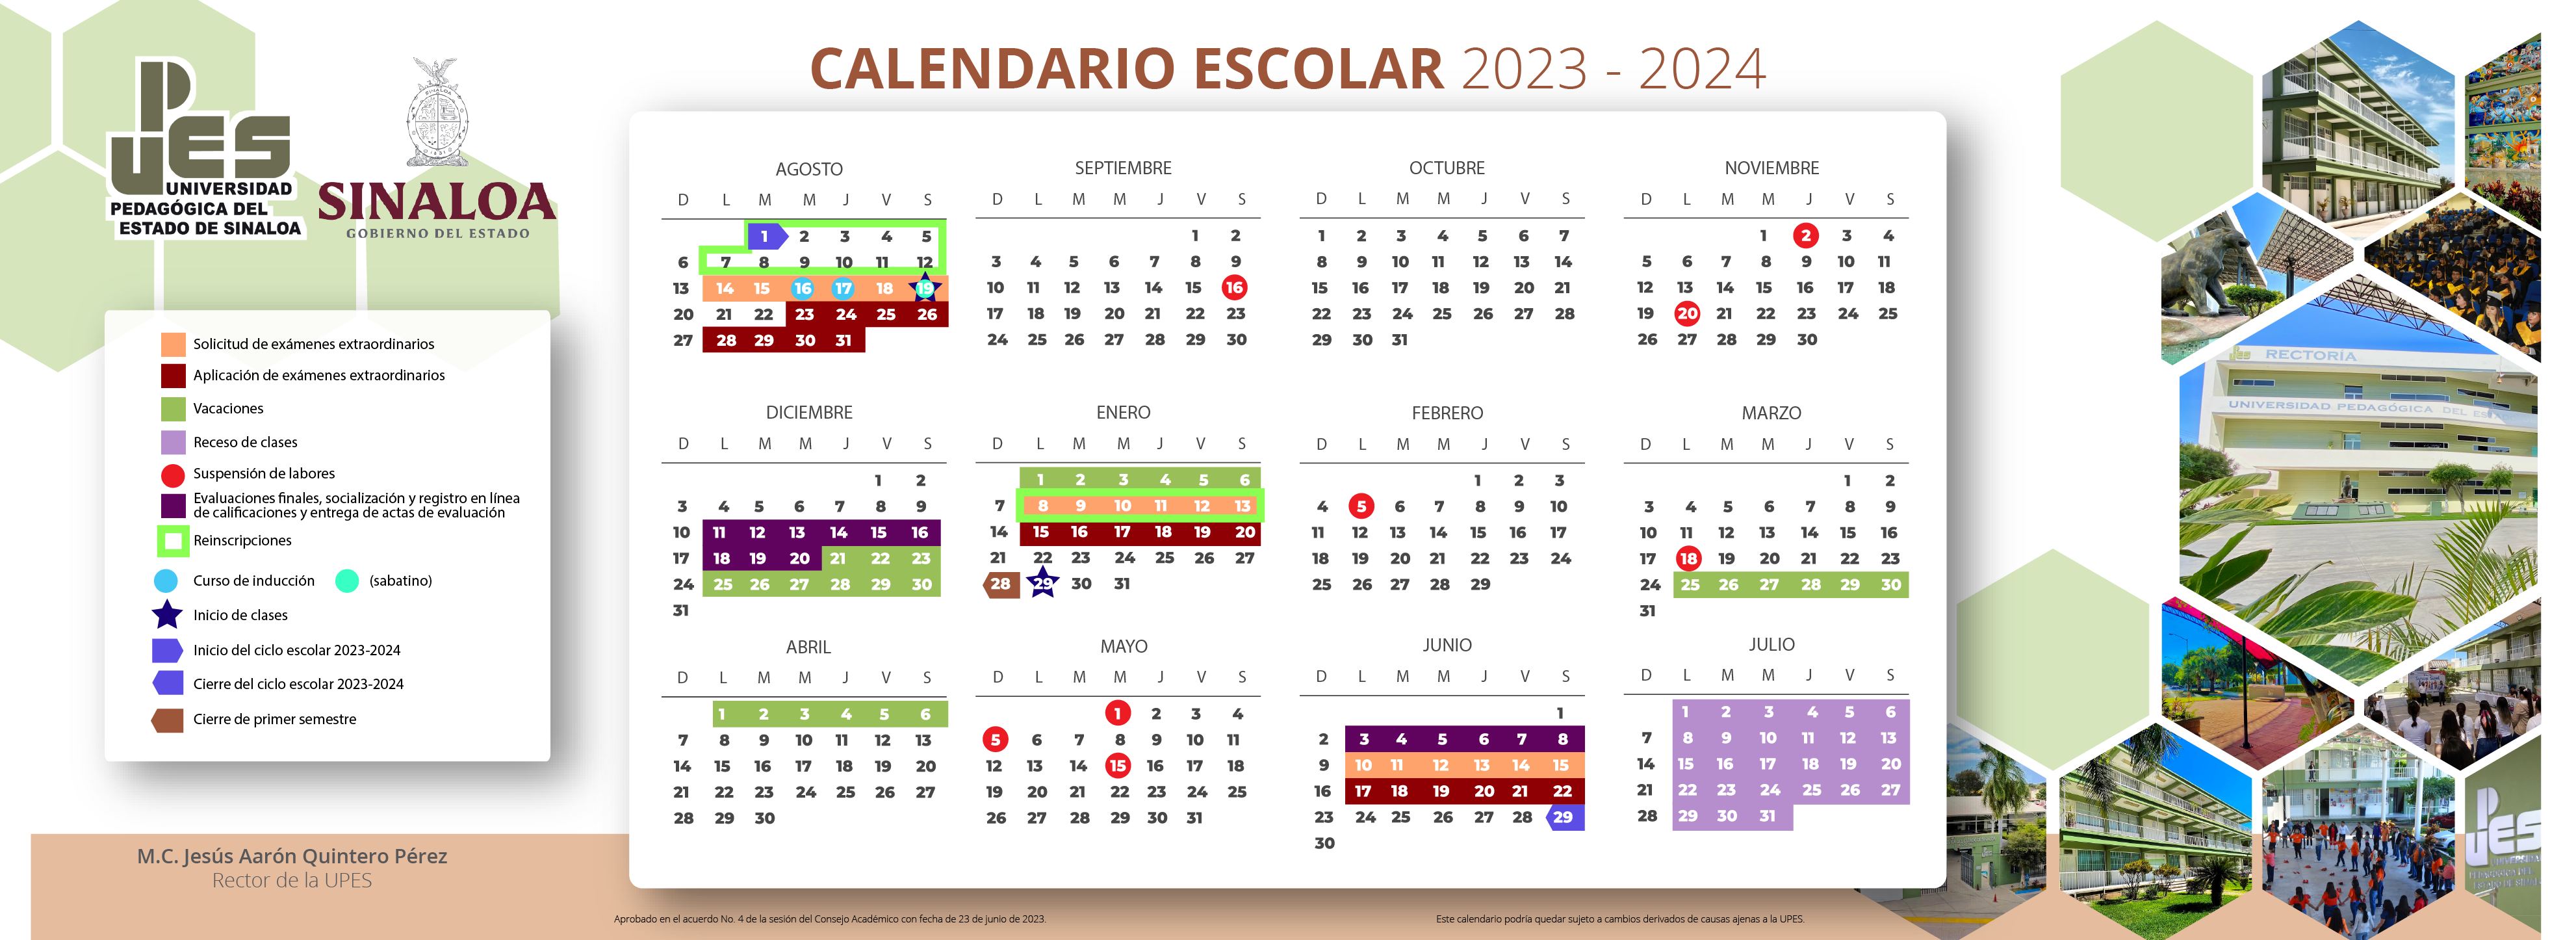 Calendario_escolar_2023-2024_web